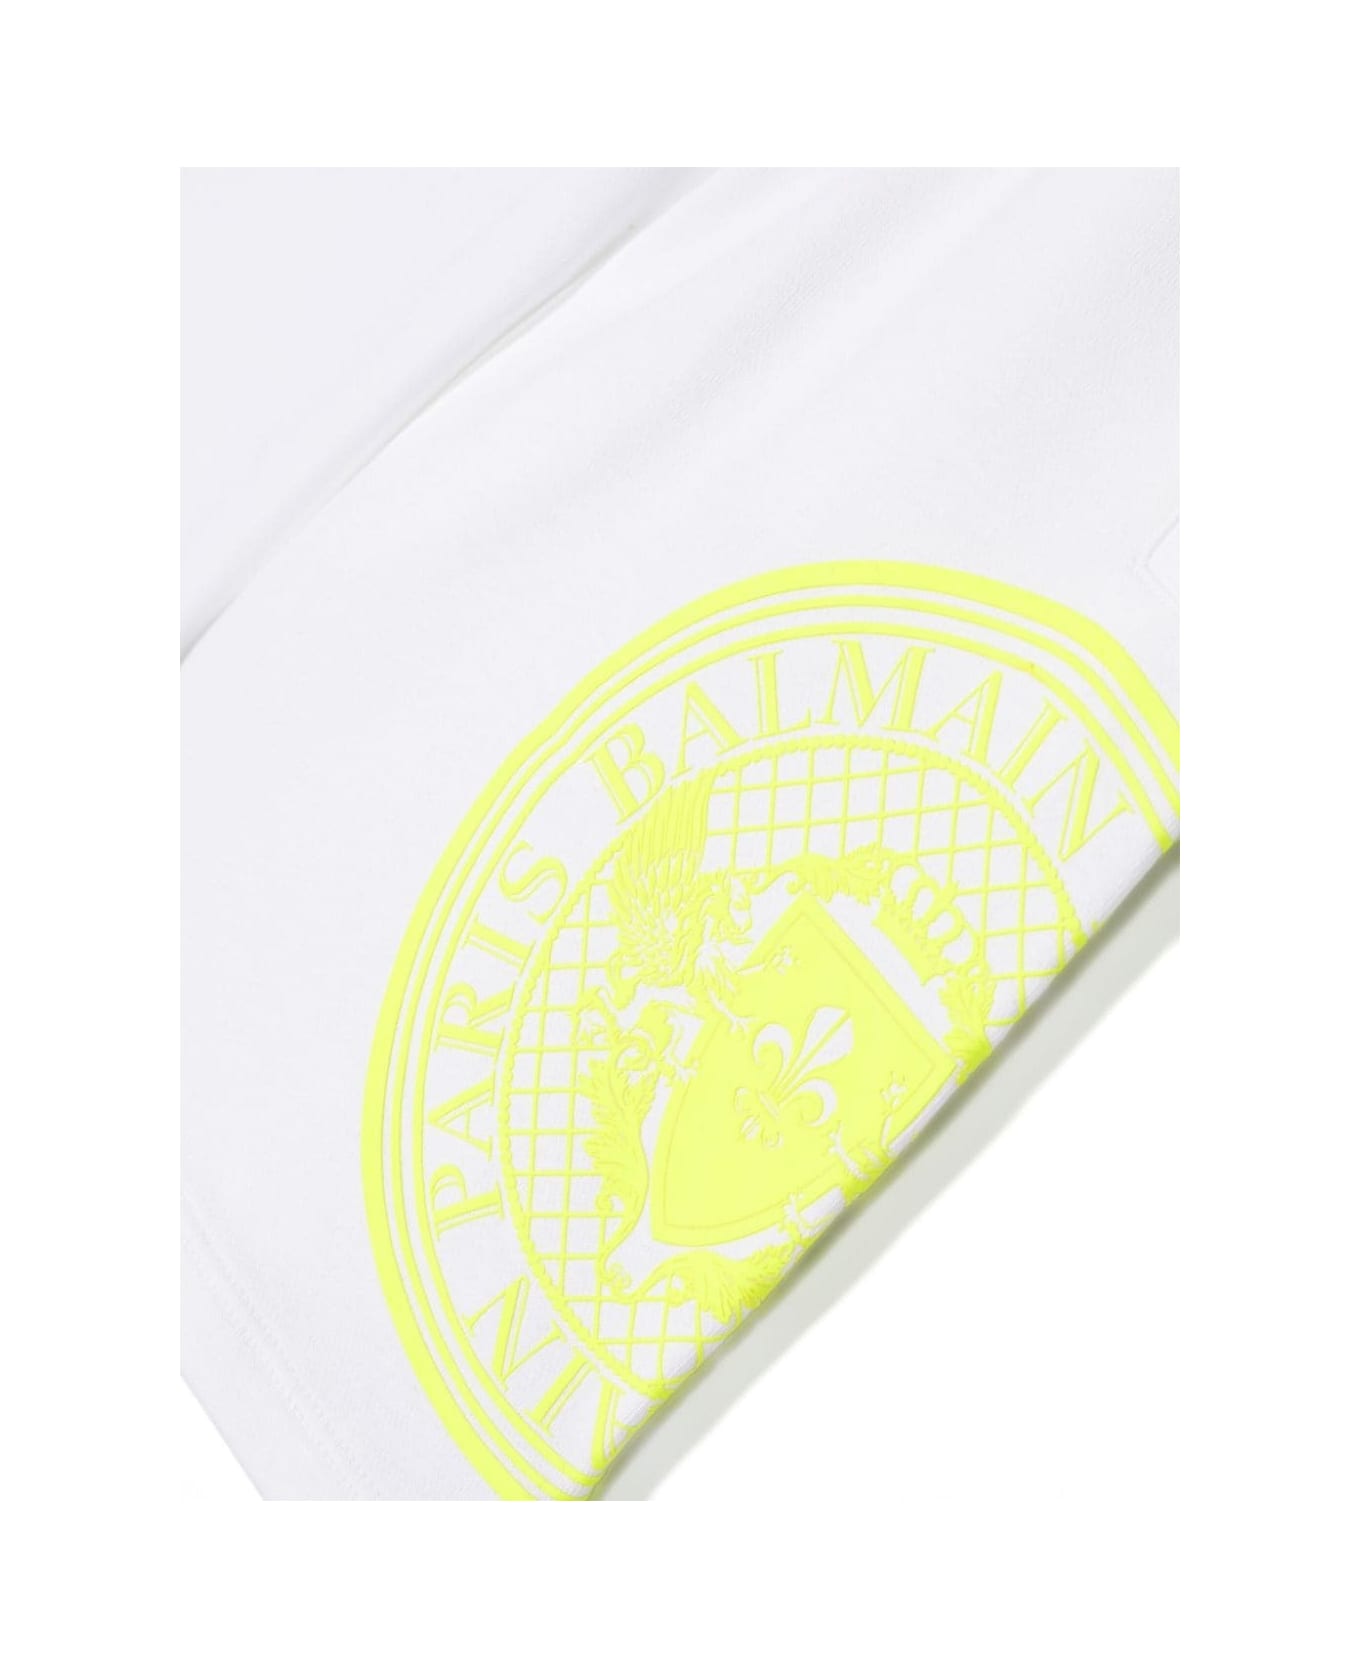 Balmain White Sleeveless Hoodie With Rubberized Logo - White